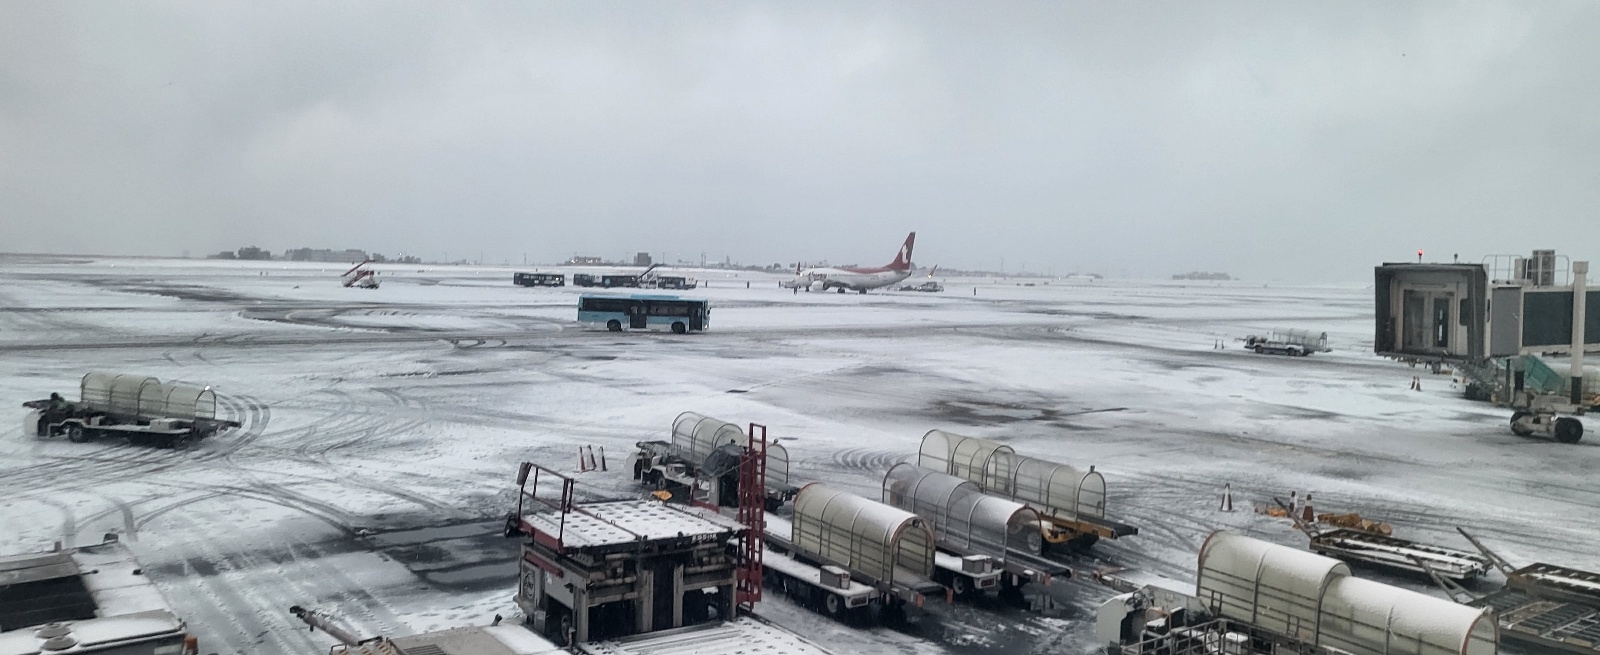 제주국제공항 활주로에 눈이 쌓여 있는 모습. 제주 강동삼 기자